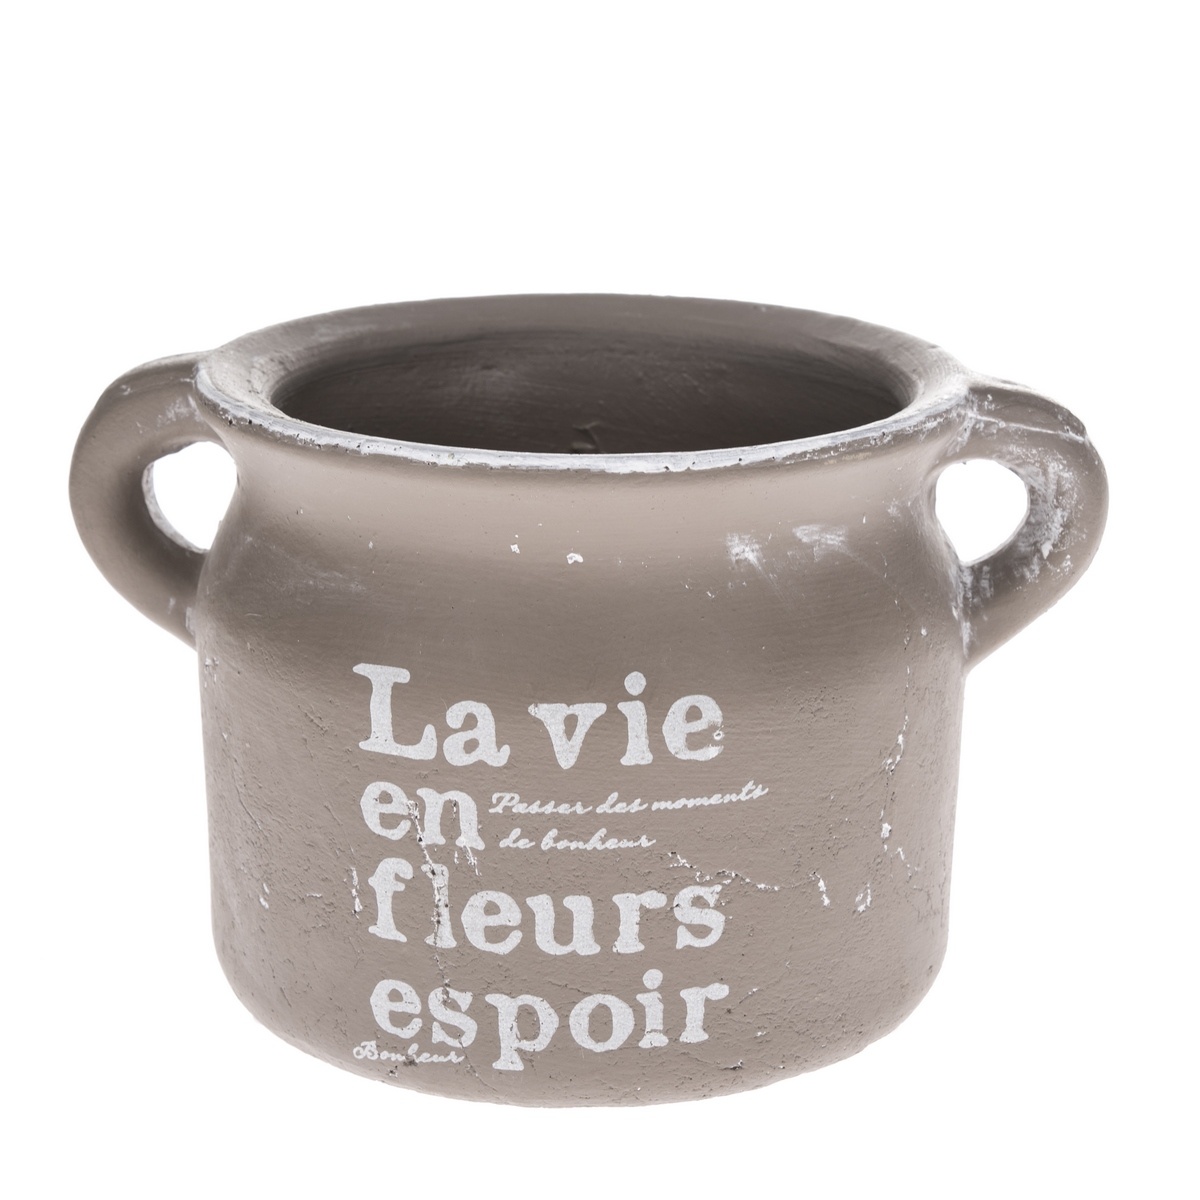 Poza Recipient ceramic de ghiveci La vie, maro, 13,5 x 11 cm